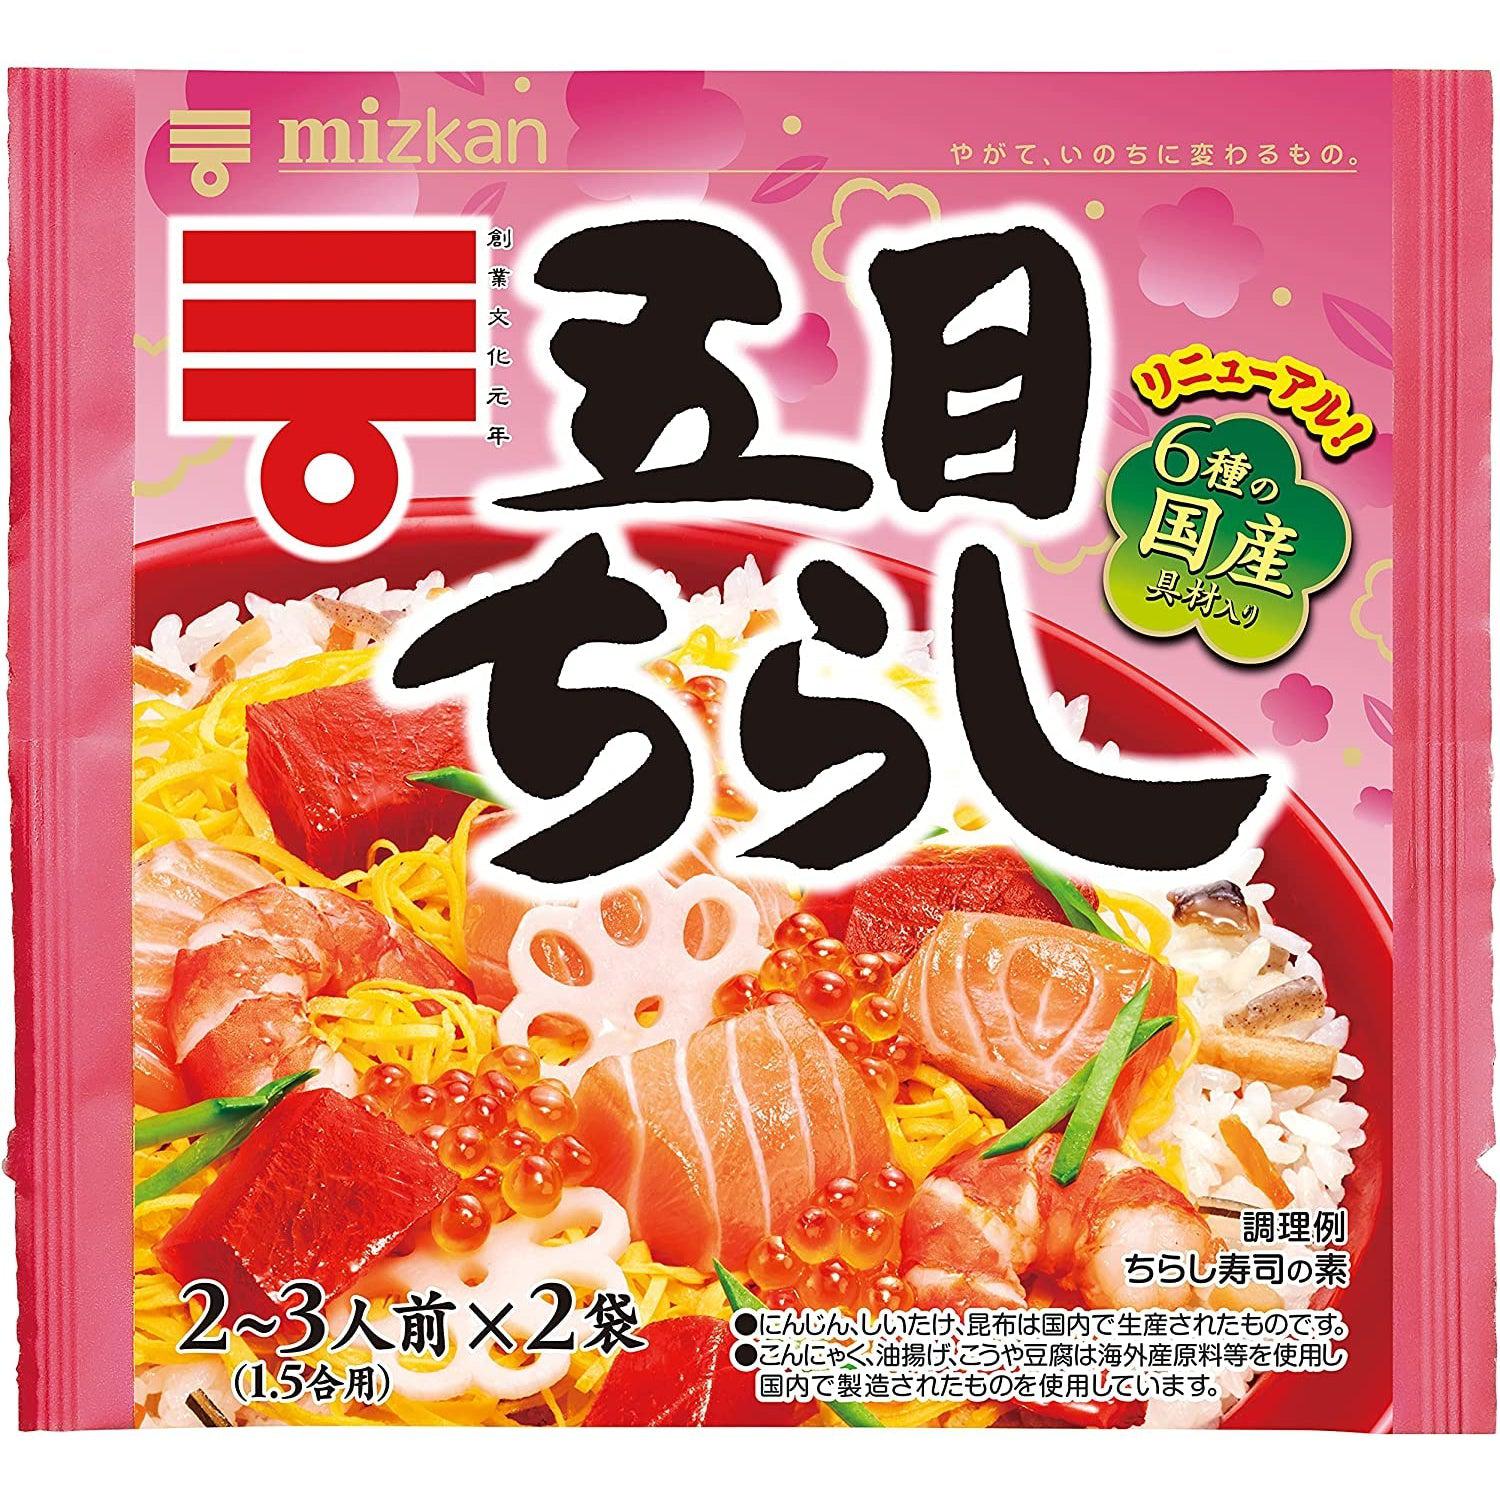 Mizkan Chirashi Sushi Kit (Seasoned Vegetables & Rice Vinegar) 210g, Japanese Taste